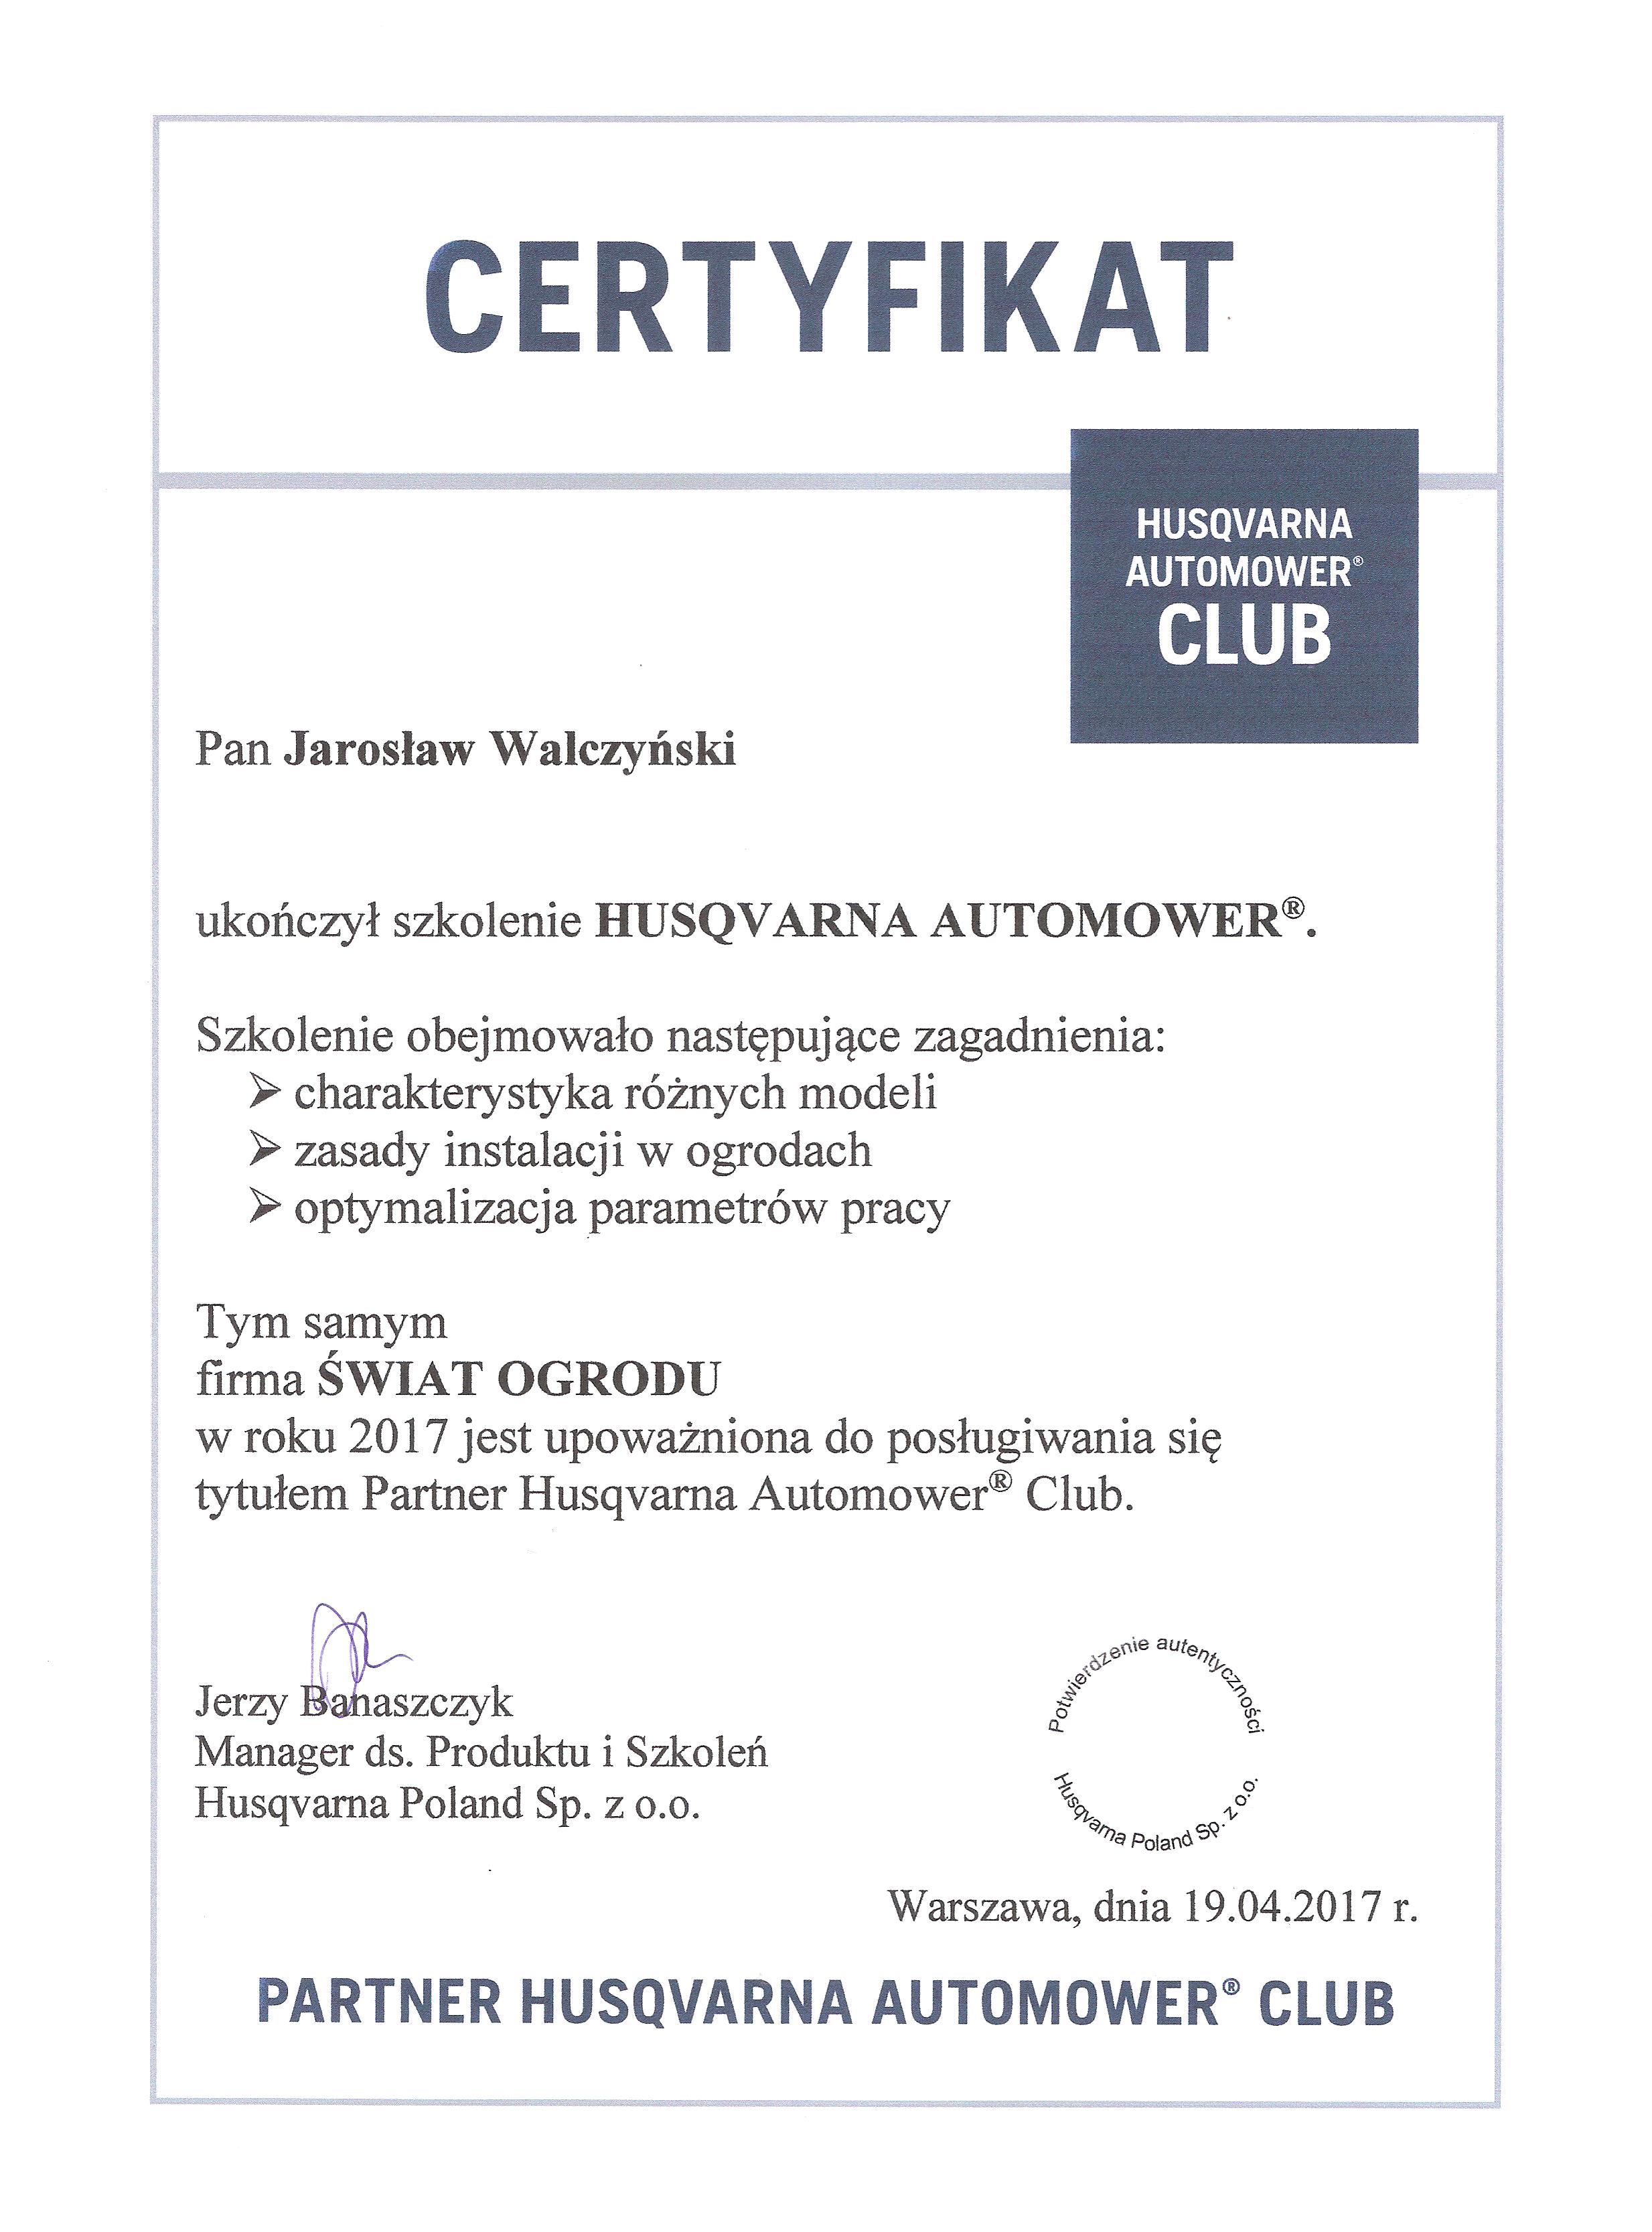 Husqvarna® Automover® Certyfikat